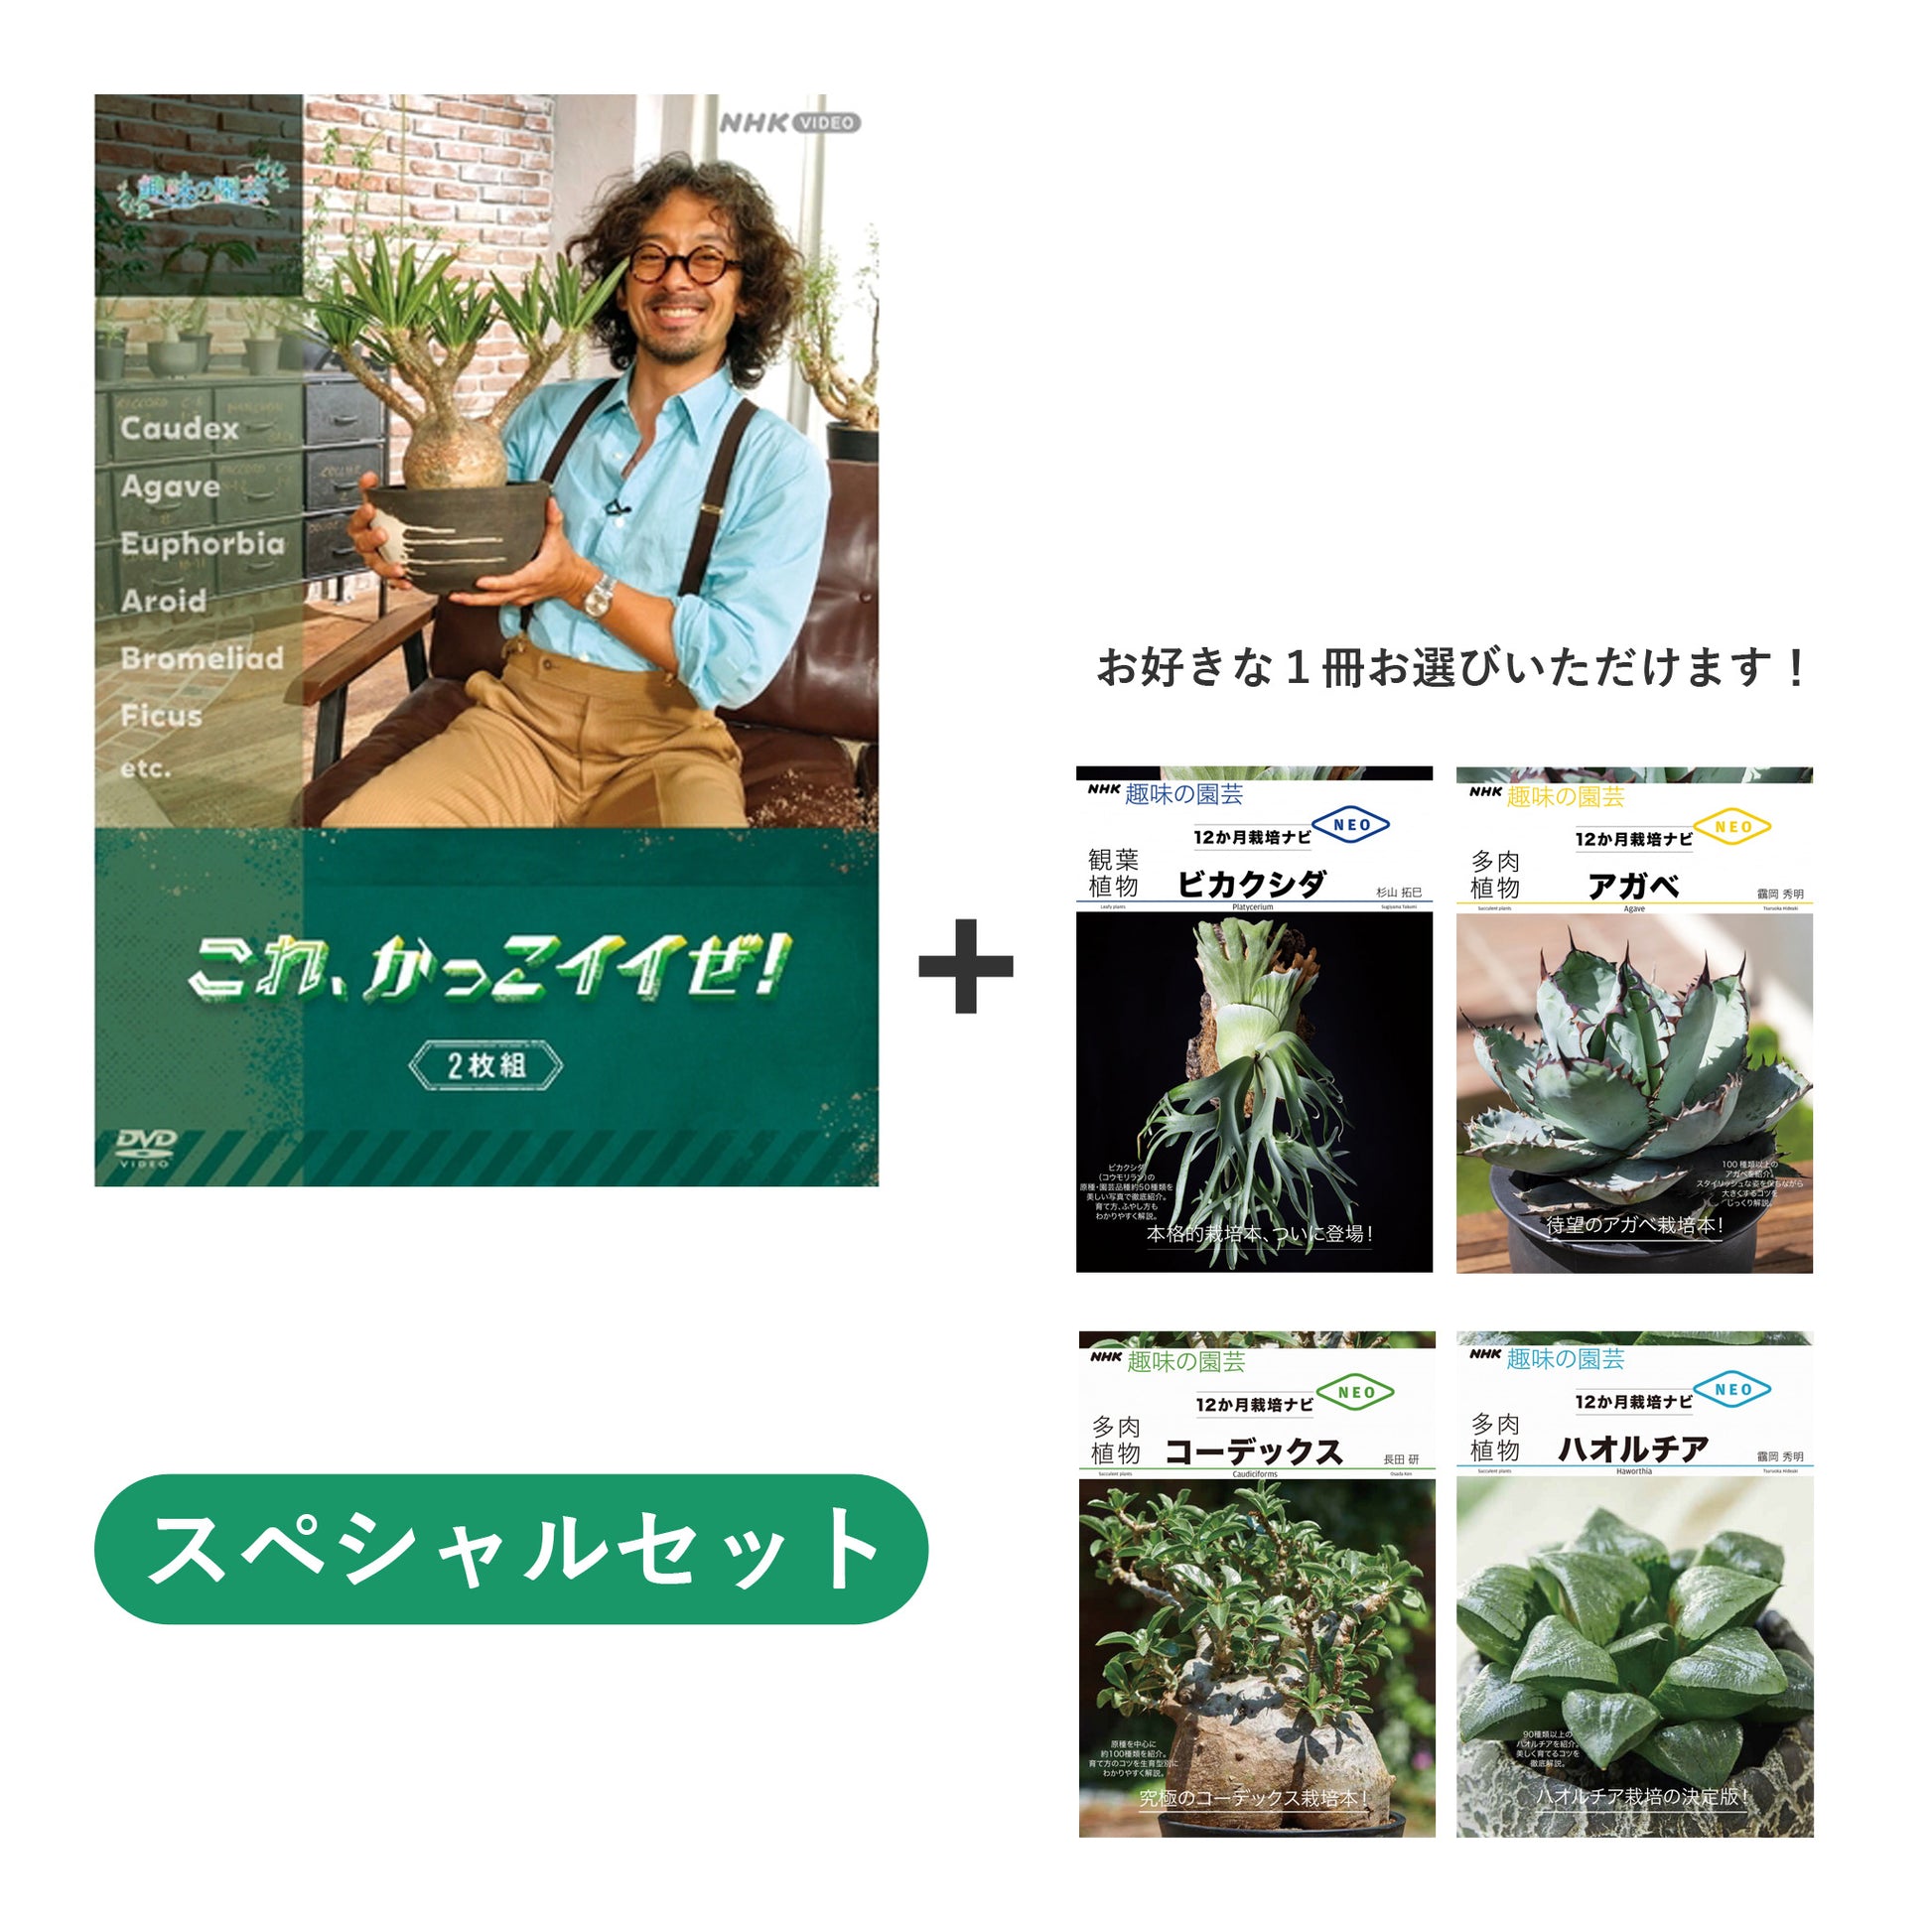 趣味の園芸 これ、かっこイイぜ！ DVD+選べる書籍【スペシャルセット